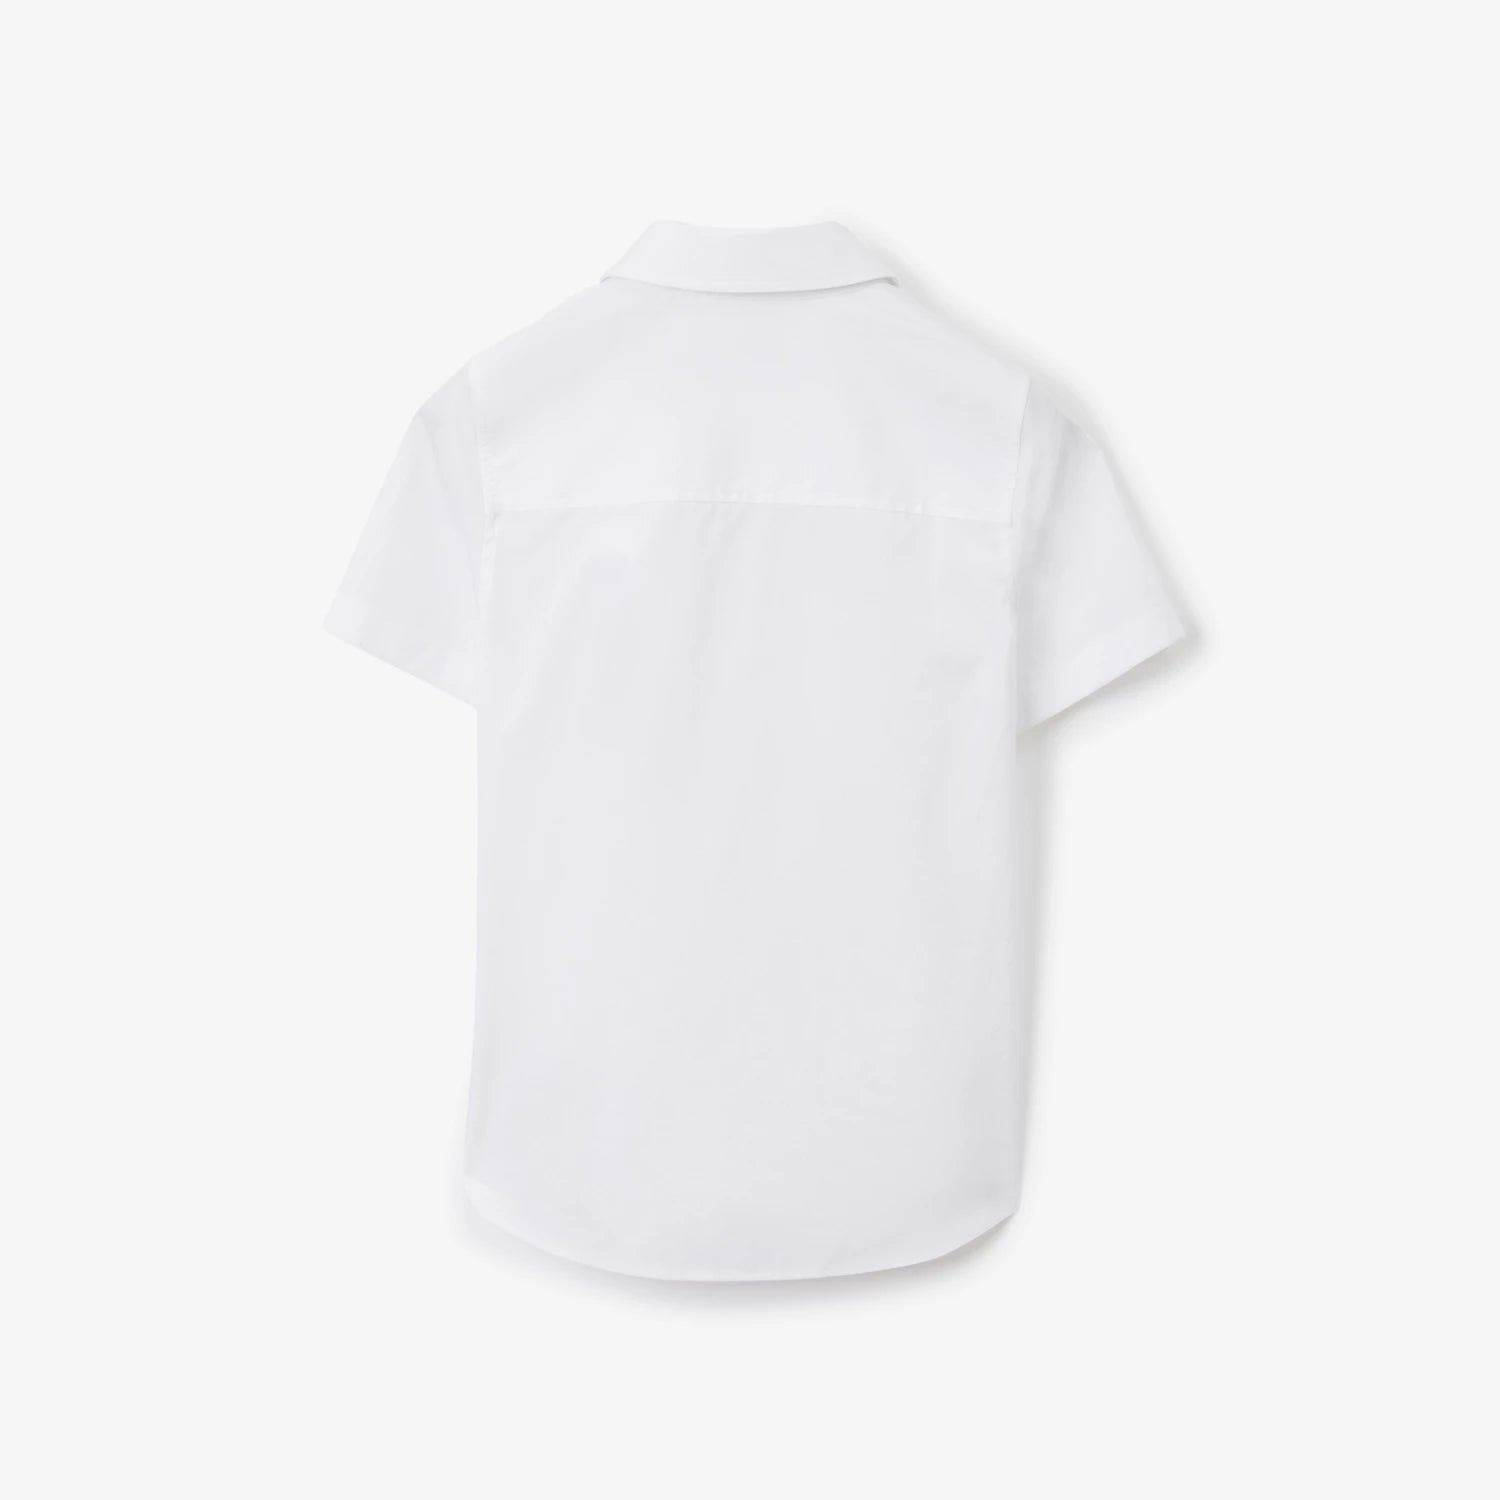 Boys White Cotton Shirt